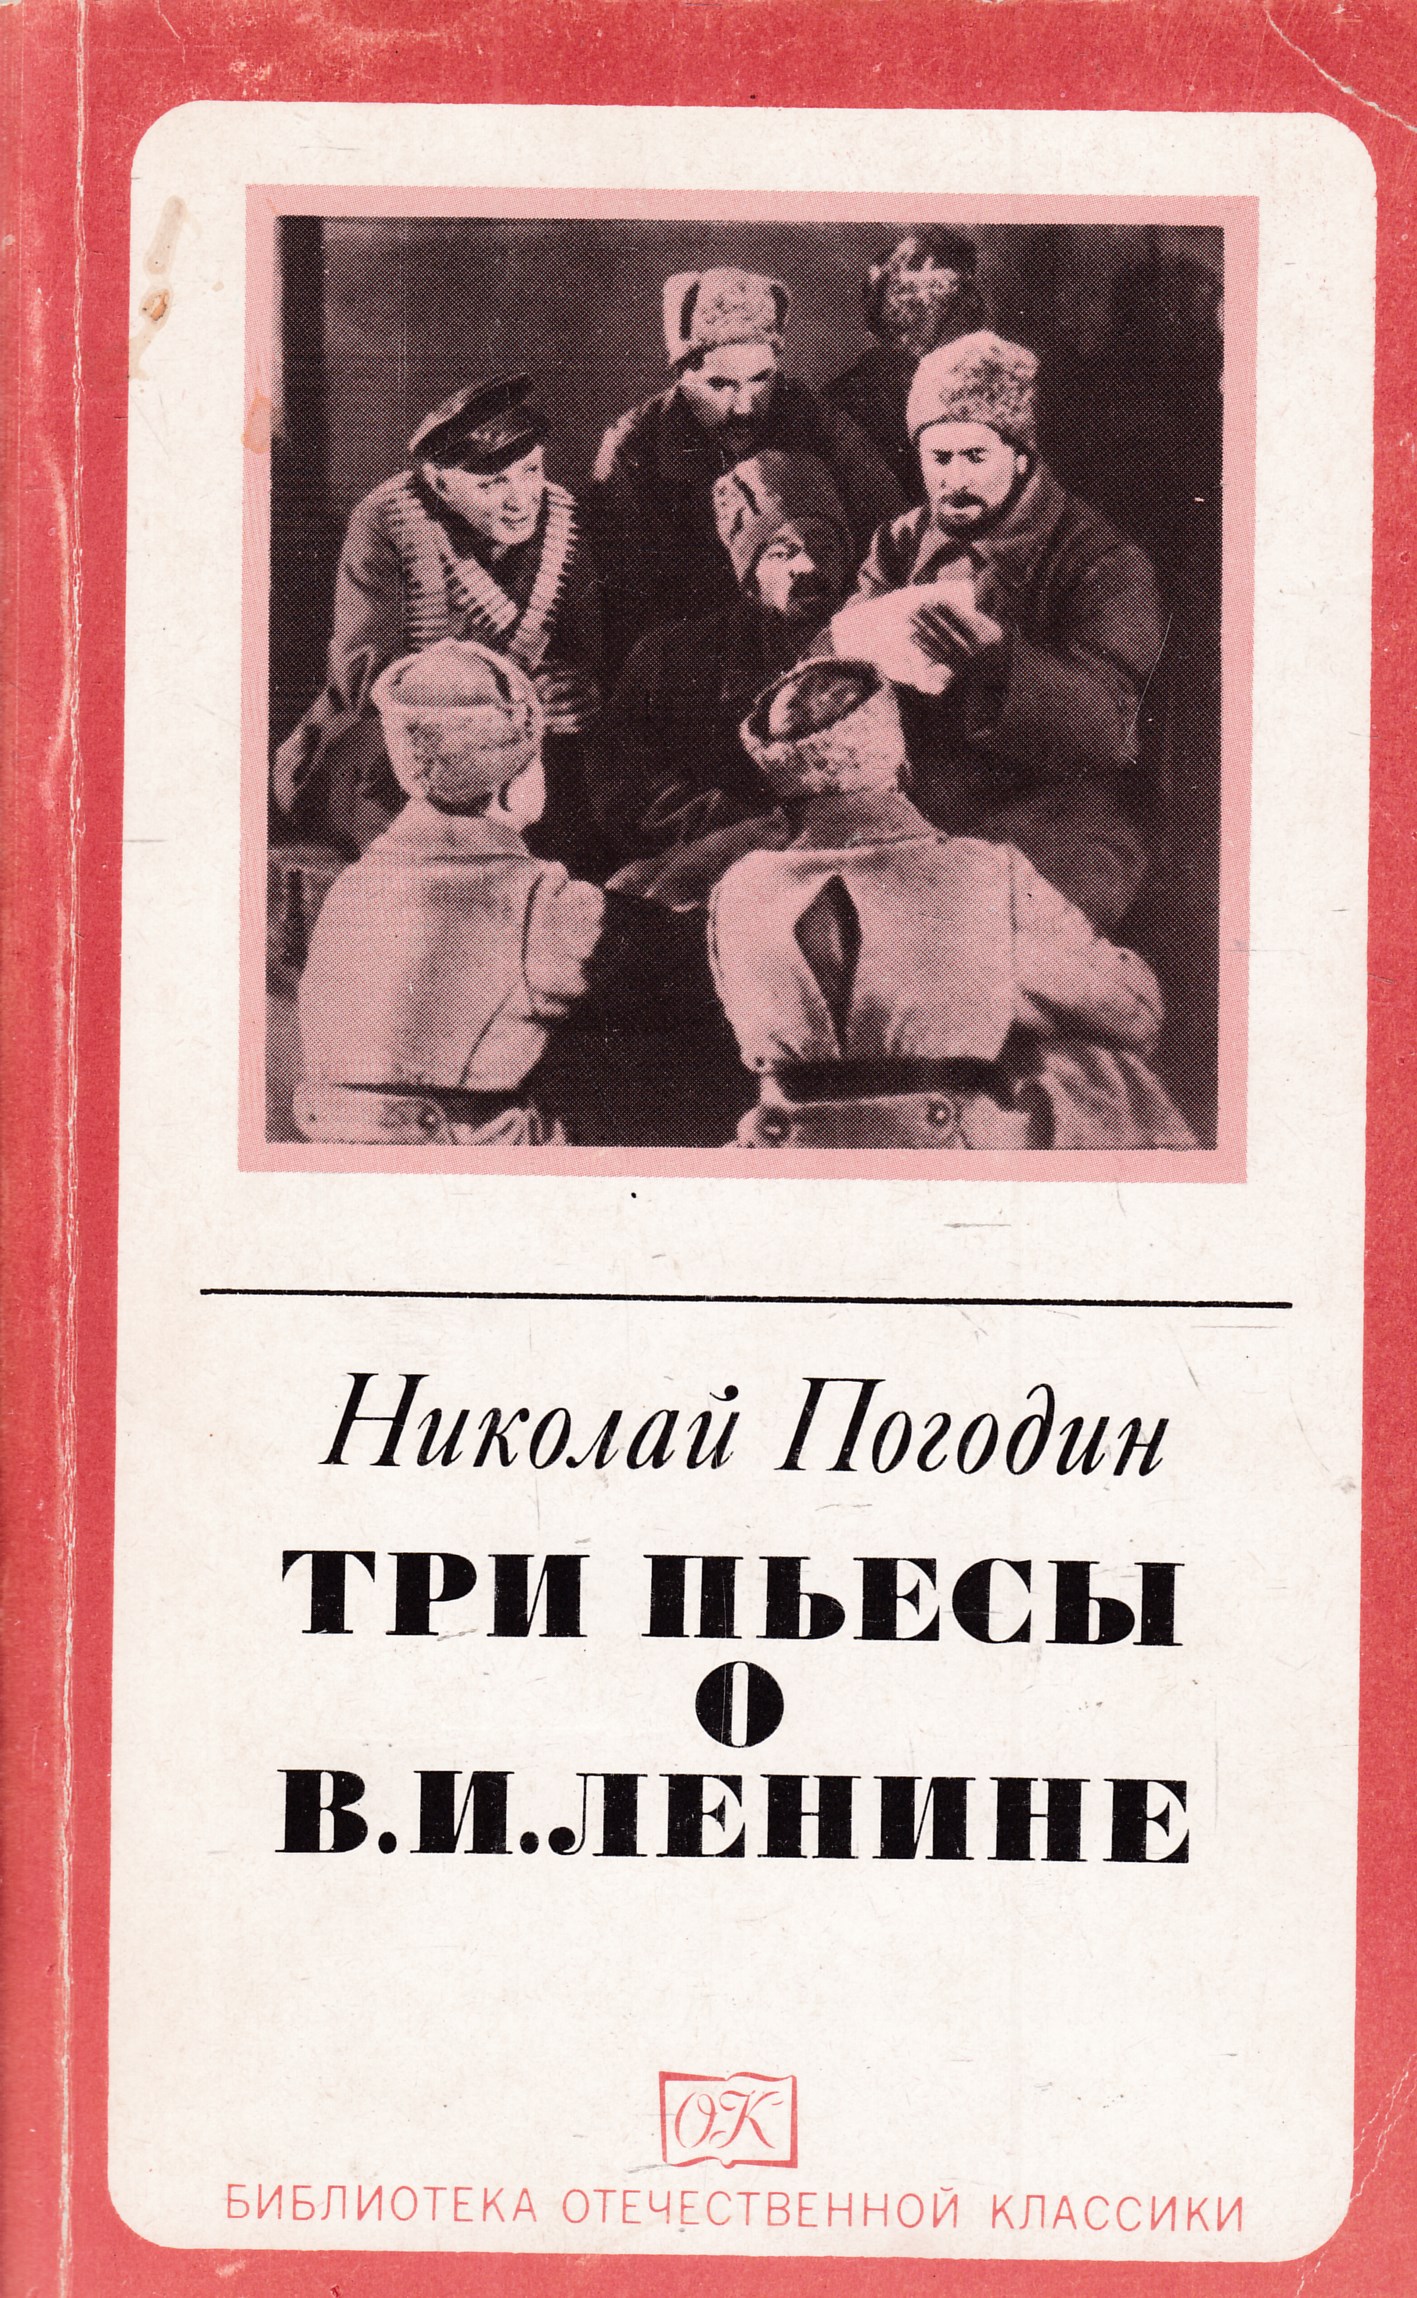 Произведение отечественных классиков. Книга Ленин.